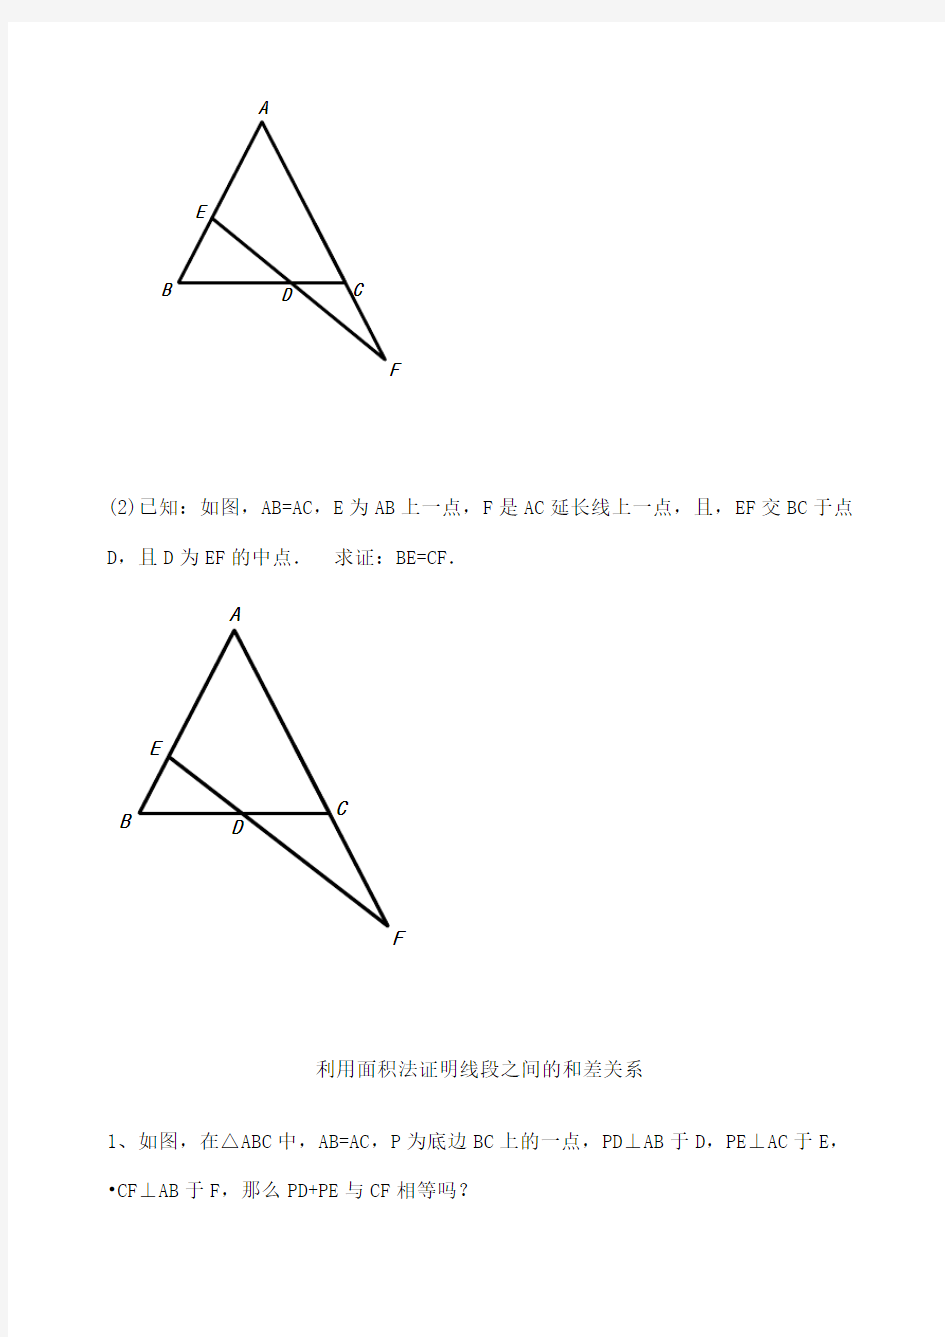 等腰三角形三线合一典型题型 